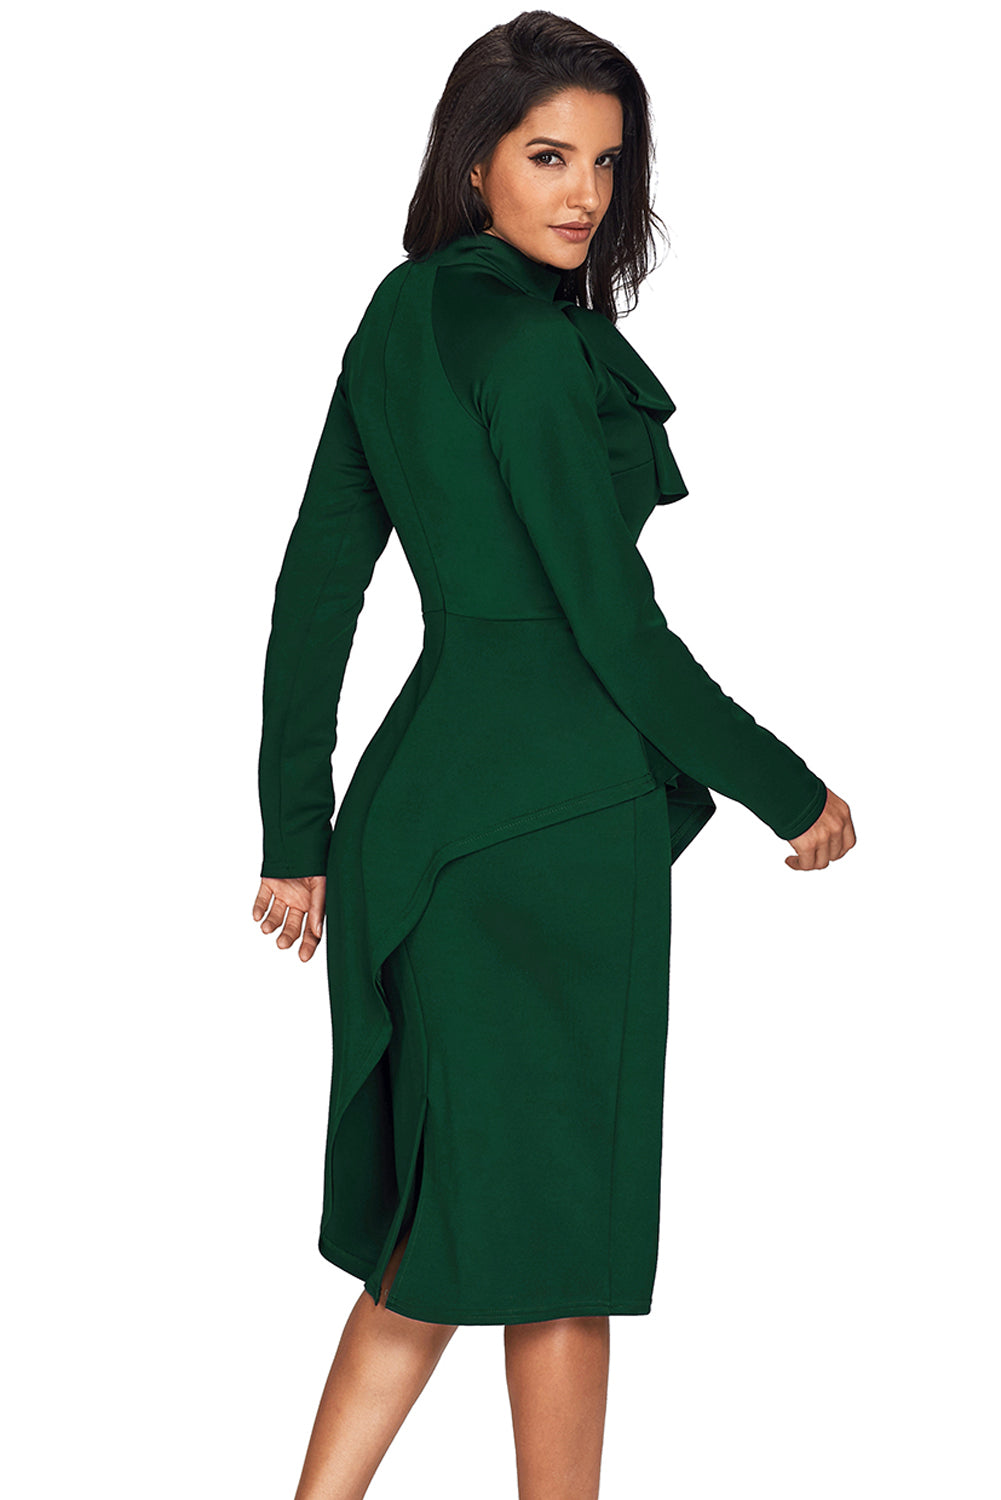 Jadegrünes, asymmetrisches Kleid mit Schluppe im Schößchen-Stil